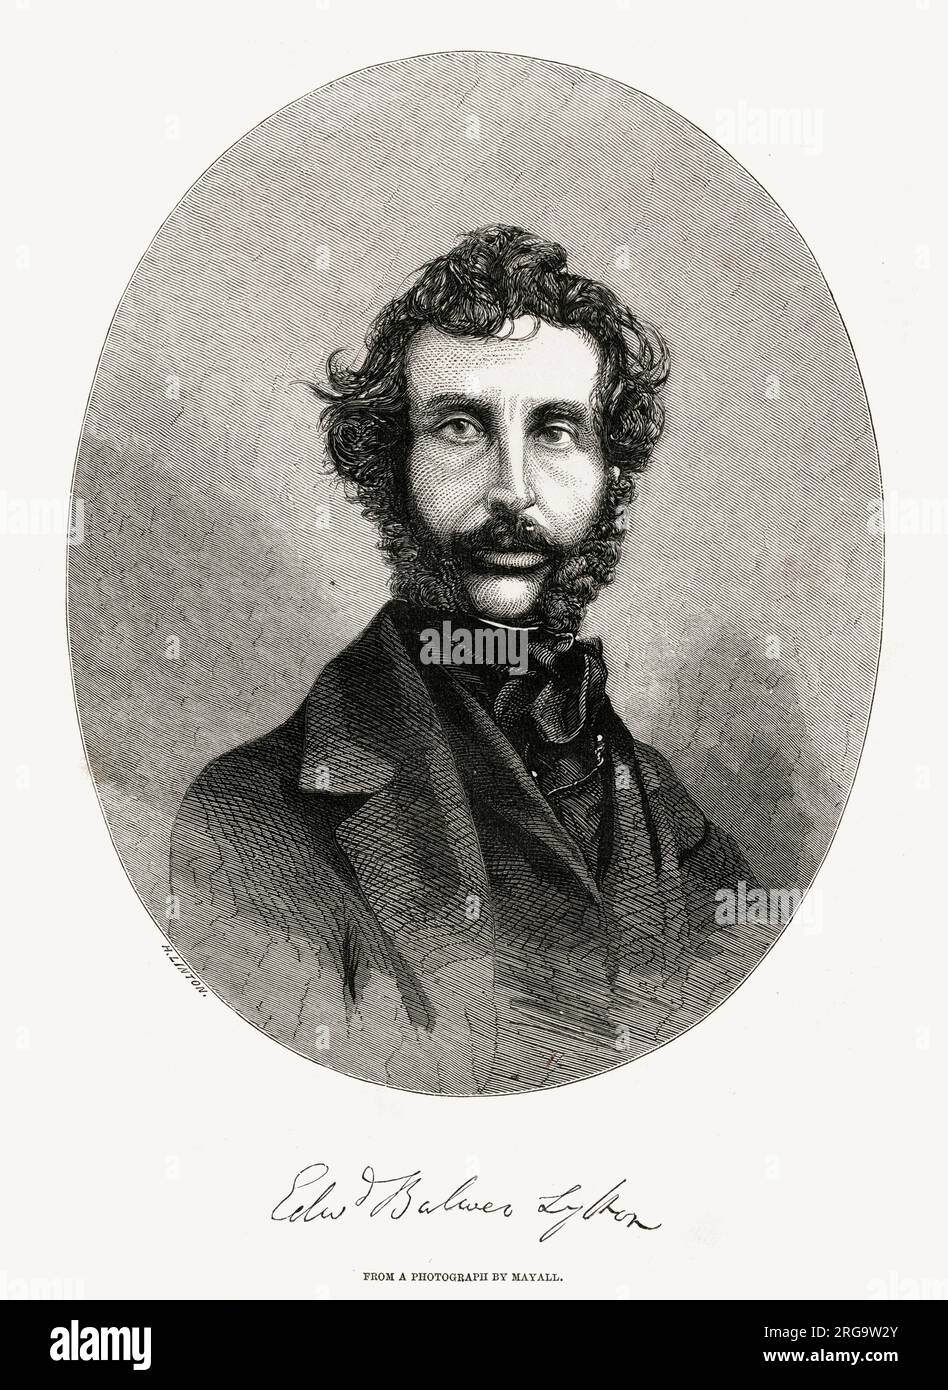 Edward George Earle Lytton Bulwer-Lytton, 1st Baron Lytton (1803-1873), écrivain et politicien anglais. Banque D'Images